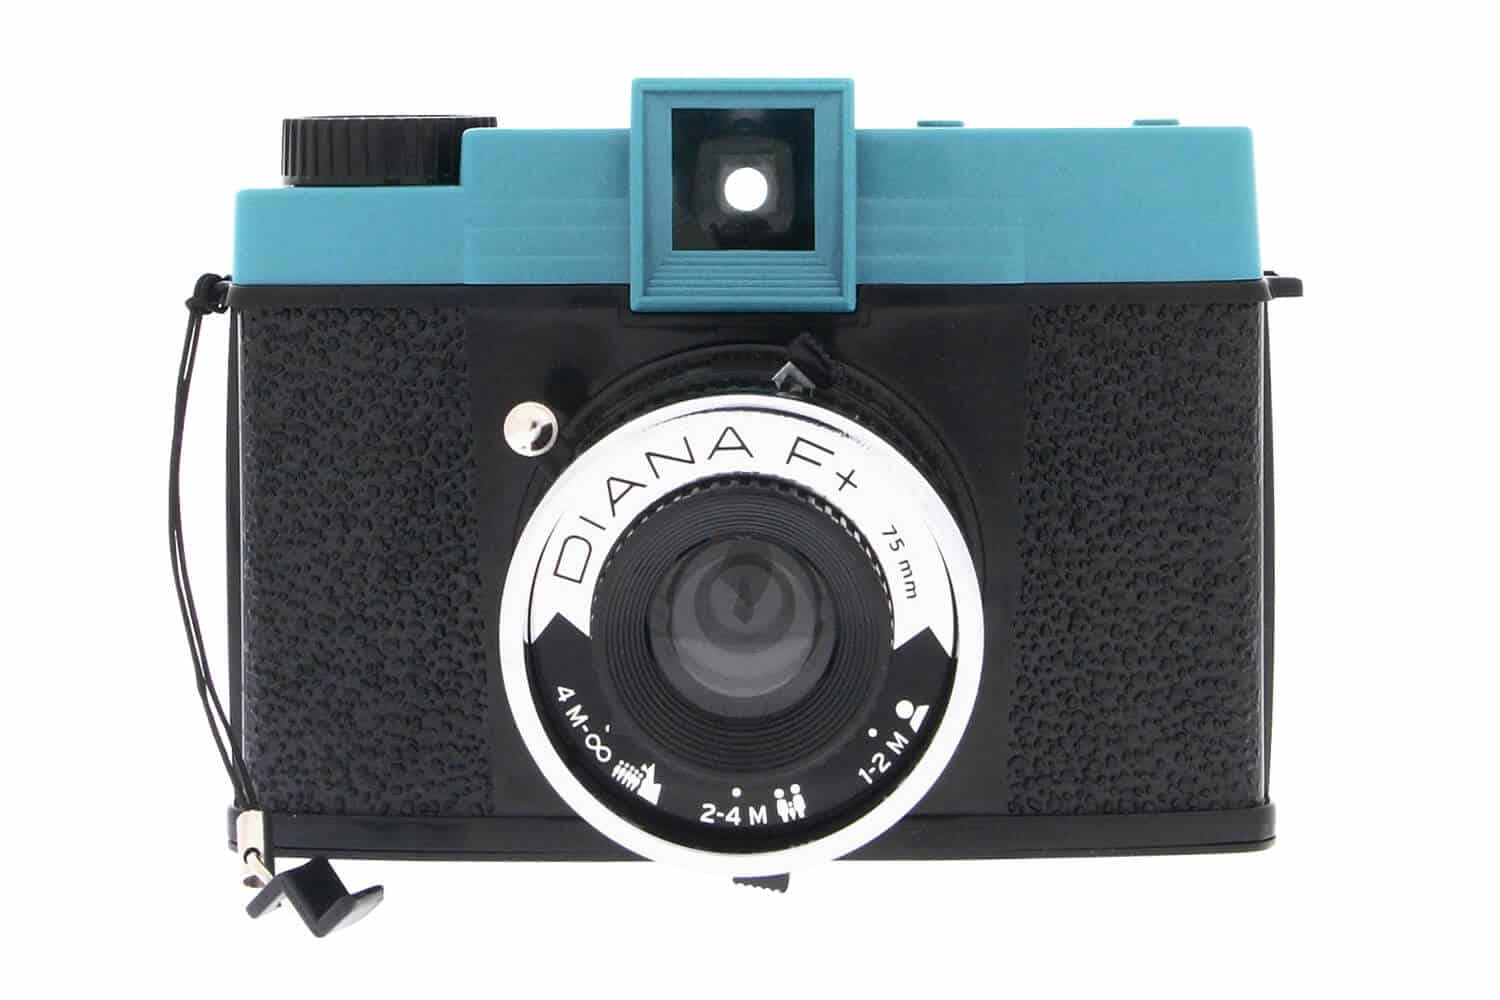 Lomography Diana F+ Medium Format Film Camera